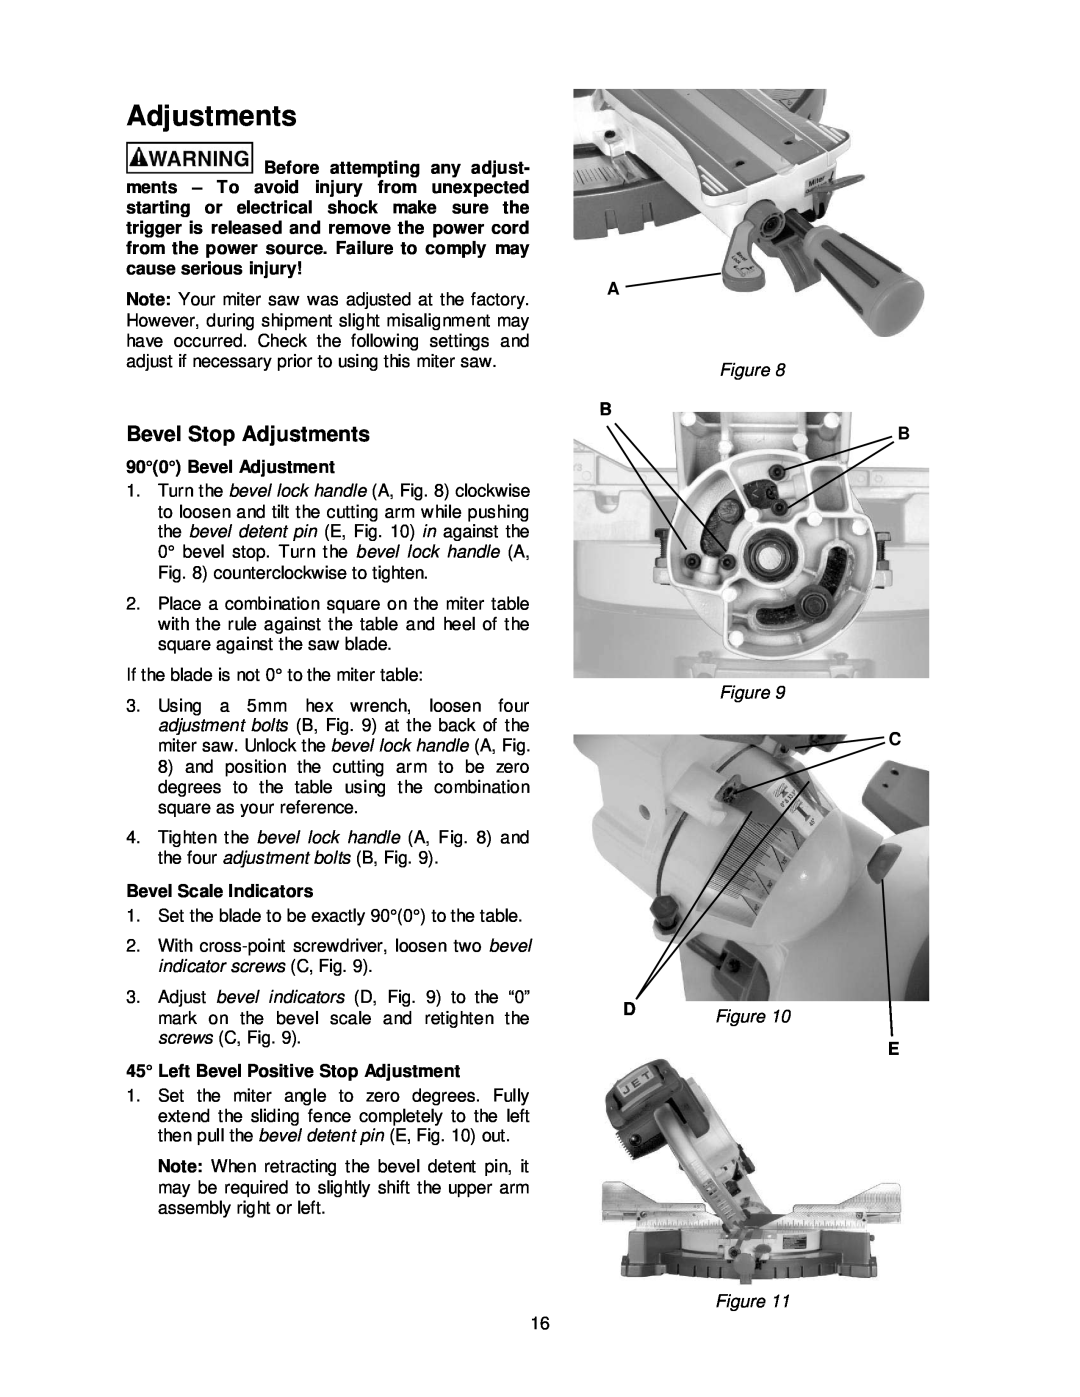 Jet Tools JMS-12SCMS manual Bevel Stop Adjustments, Bevel Adjustment, Bevel Scale Indicators, D Figure 